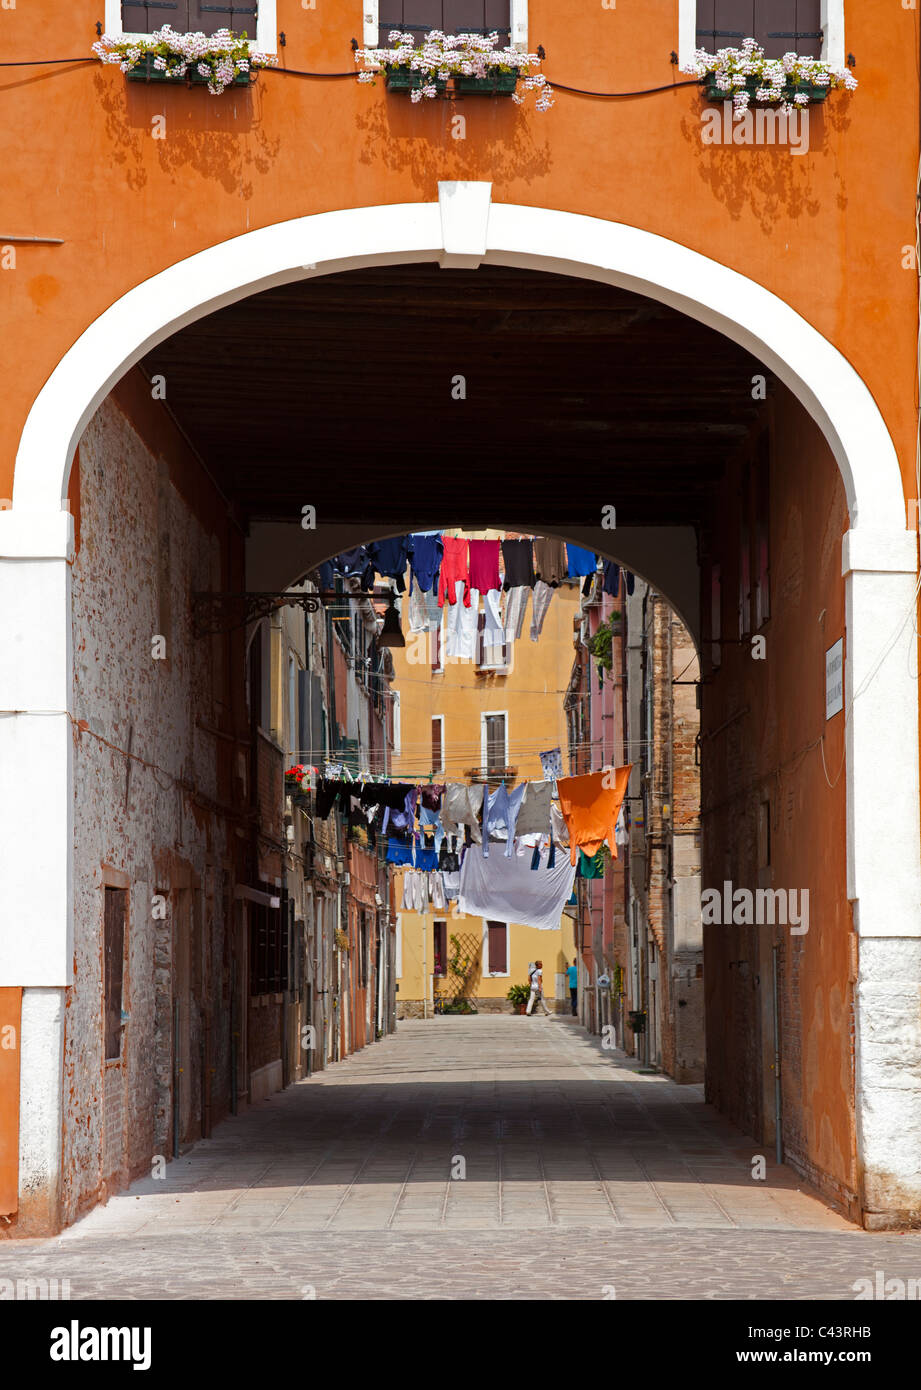 Venise entrée voûtée avec lave-au-dessus de la rue pavée Italie Europe Banque D'Images